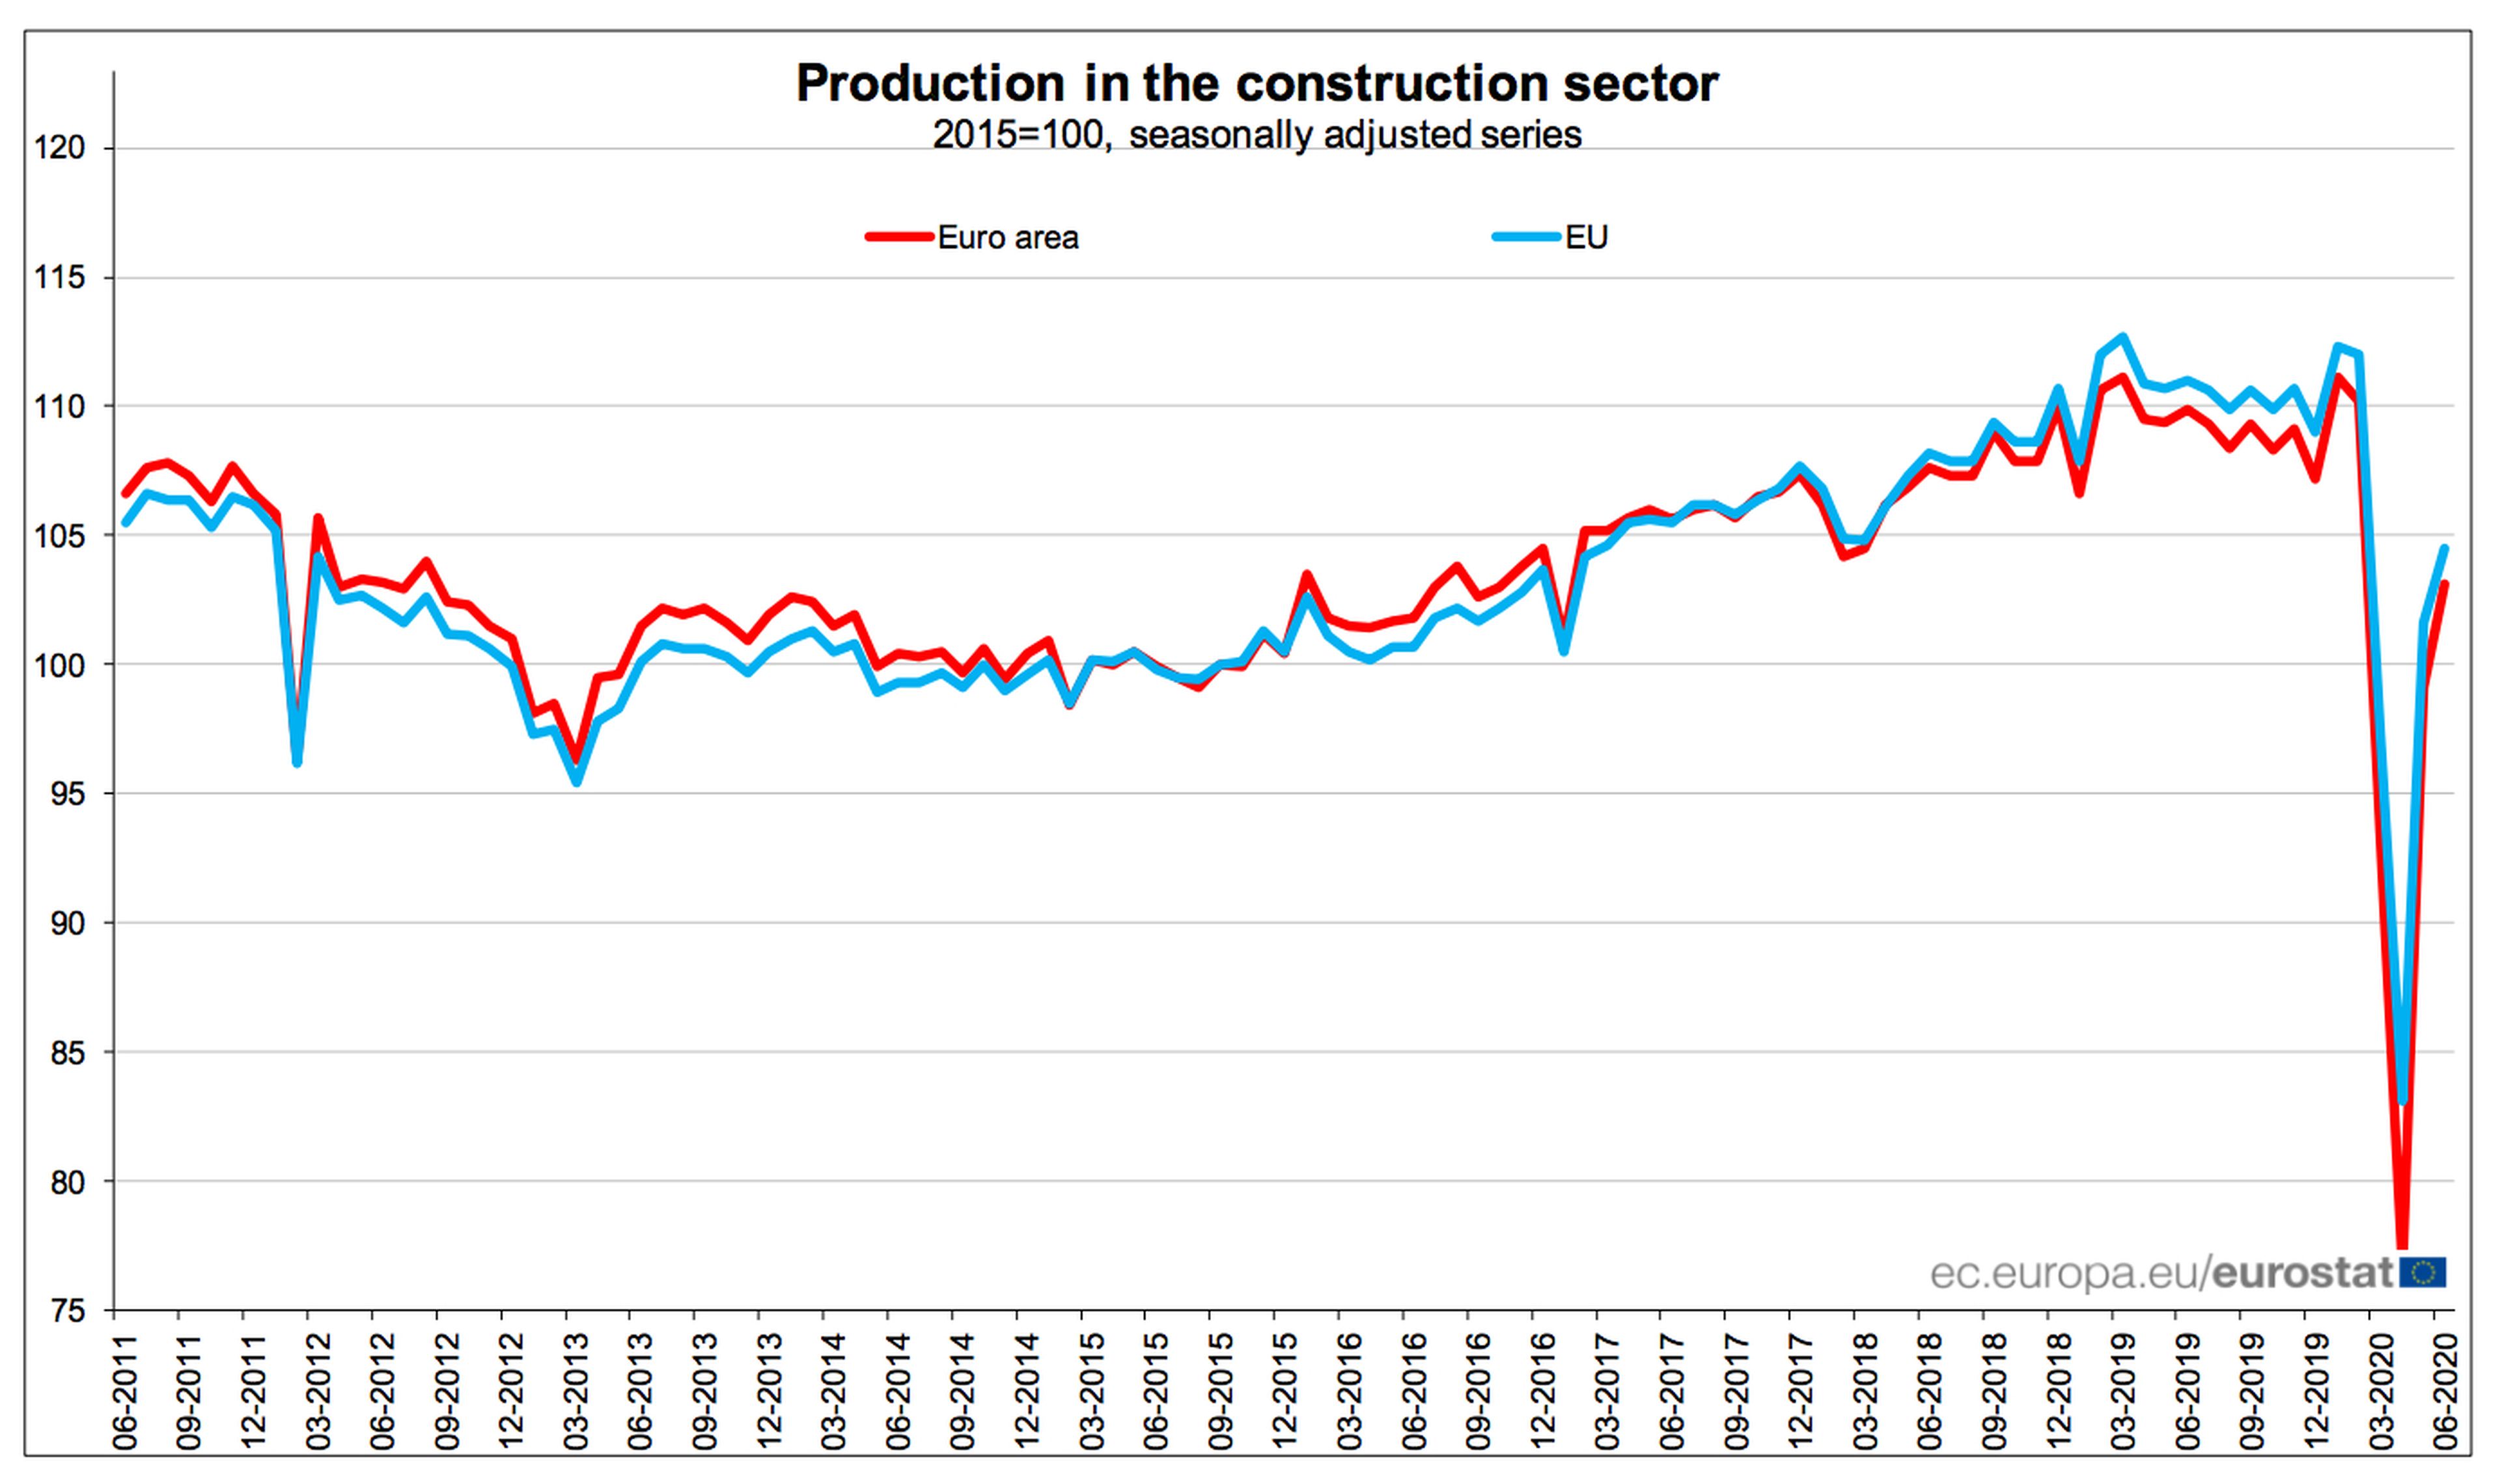 Evolución de la producción del sector de la construcción en la UE y la eurozona